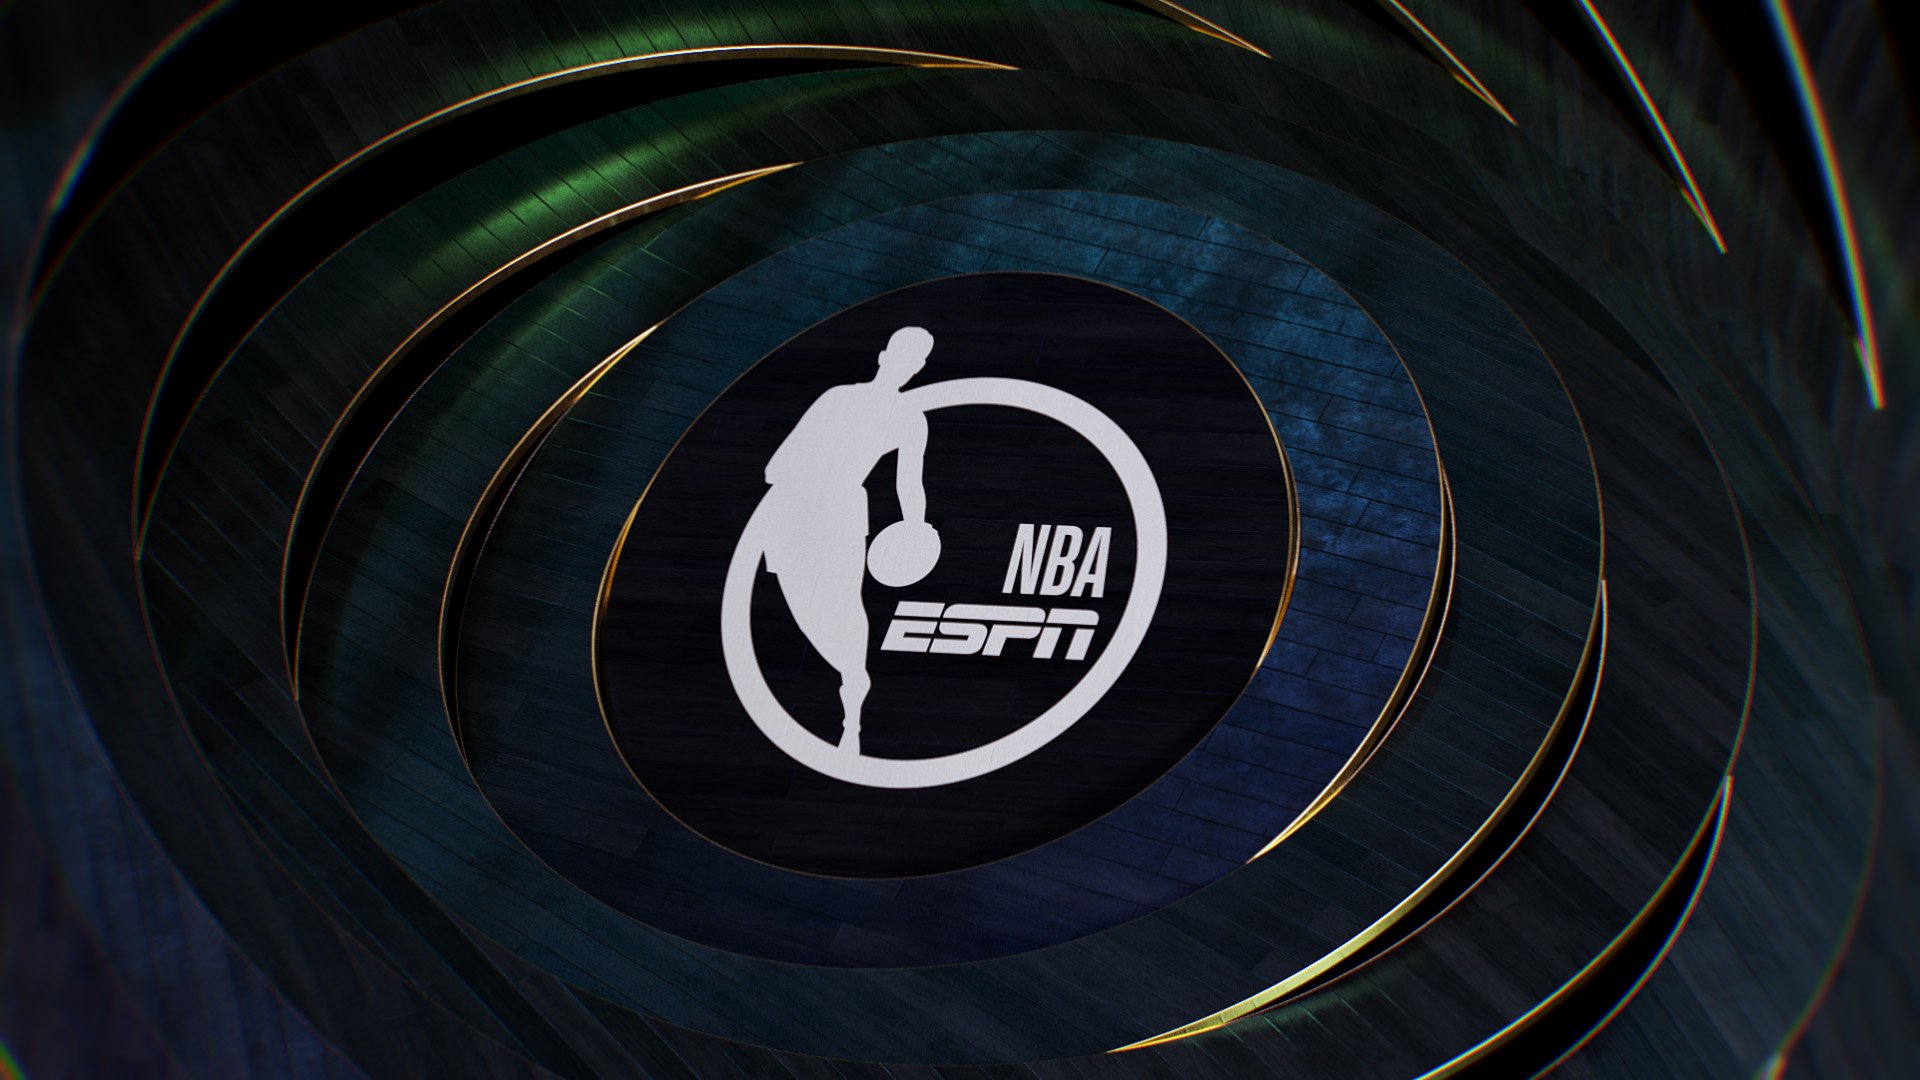 ESPN_NBA_Finals23_Design_B_RM_002_00003.jpg